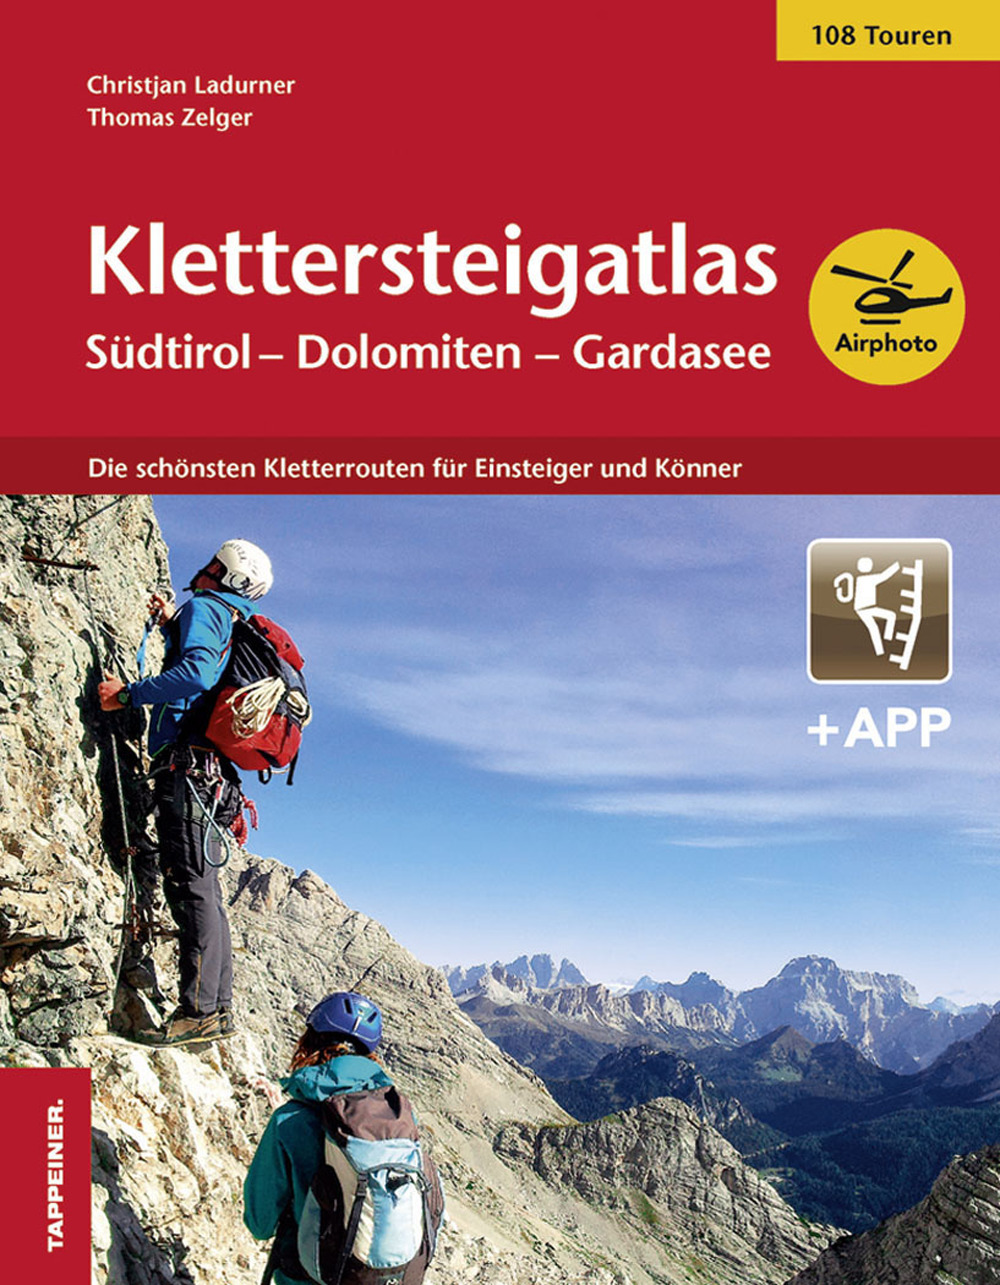 Klettersteigatlas. Südtirol, Dolomiten, Gardasee. Con app